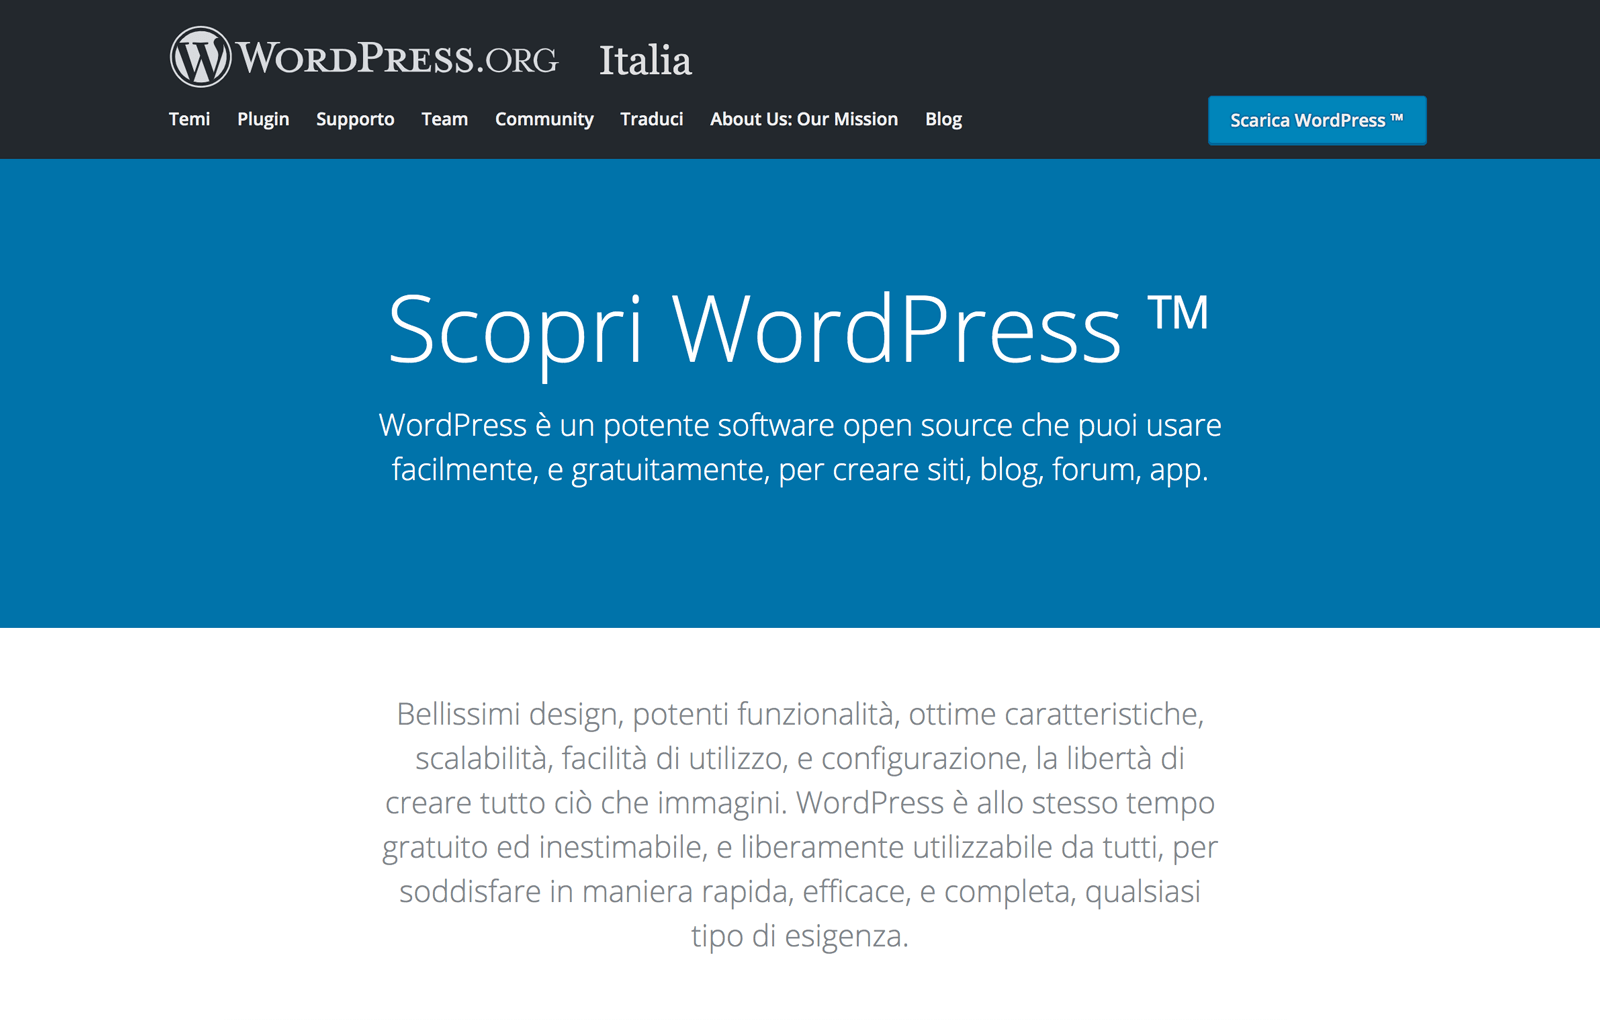 wordpress.org, una delle migliori piattaforme di blog